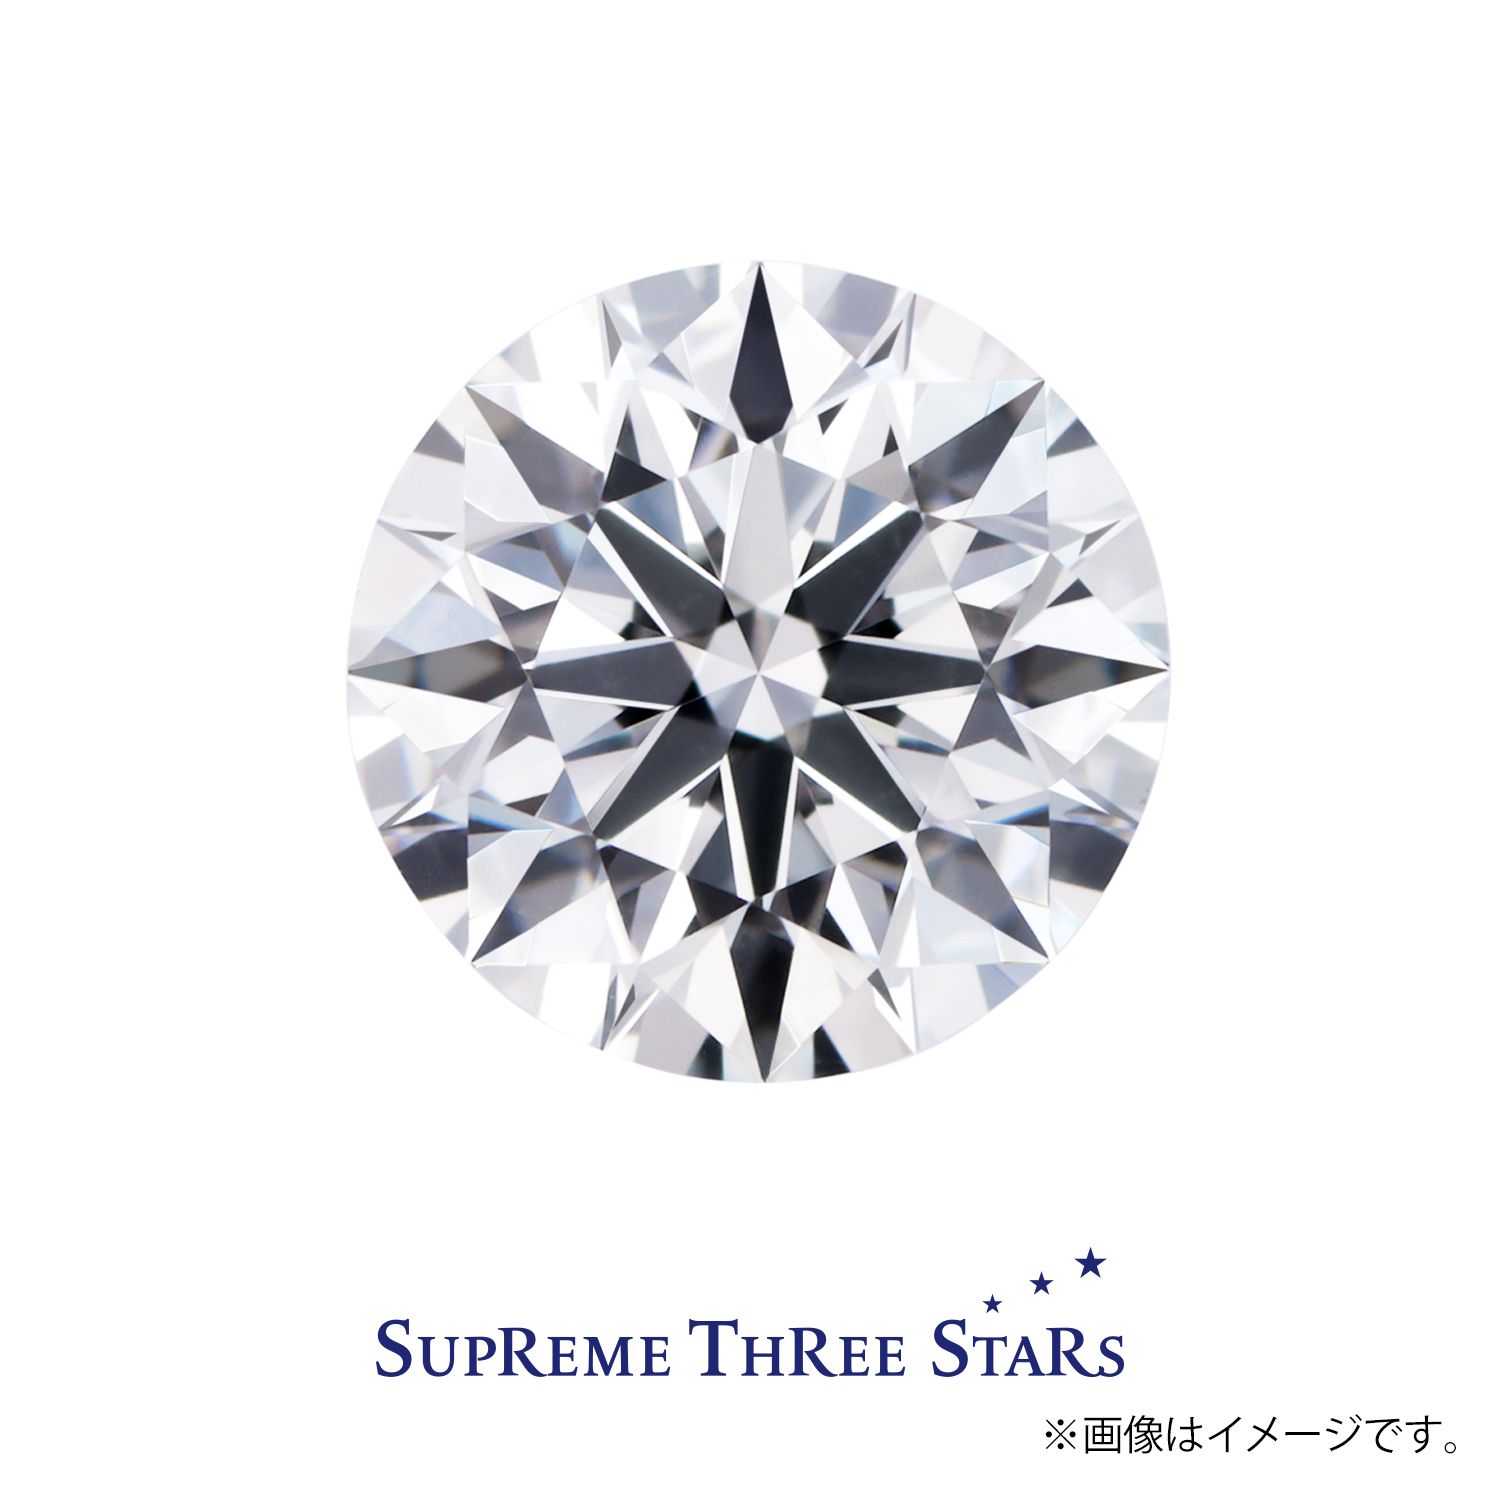 0.407ct Round ダイヤモンド / Ⅾ / VS1 / 3EX H&C